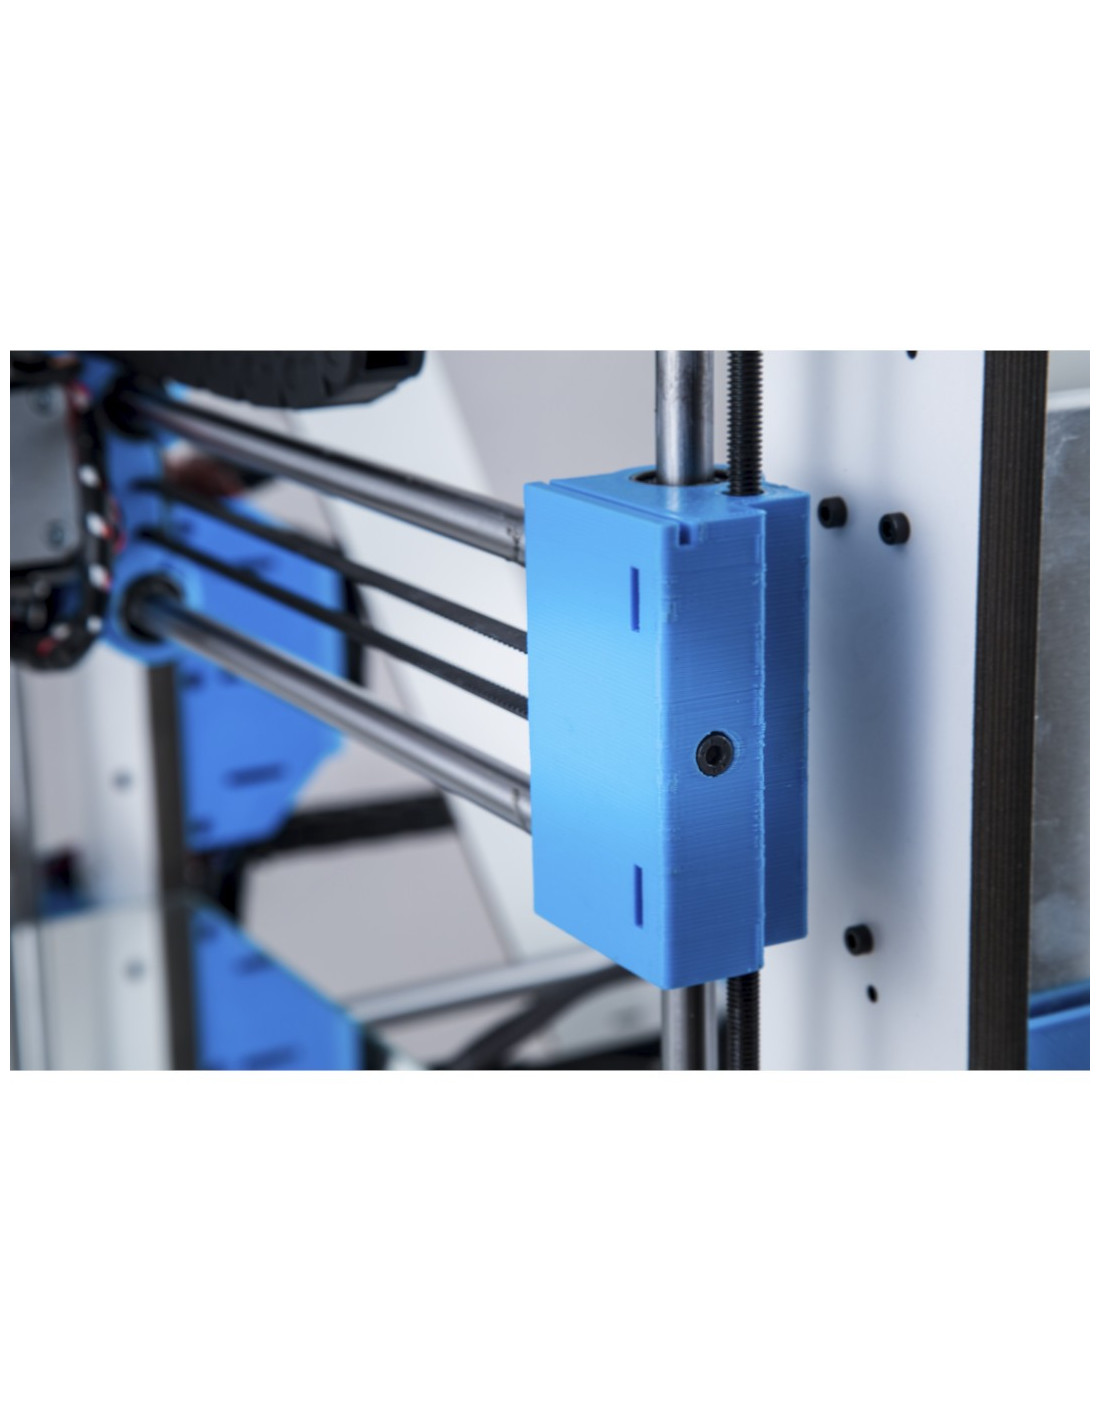 Abax Pri 3 3D-Drucker